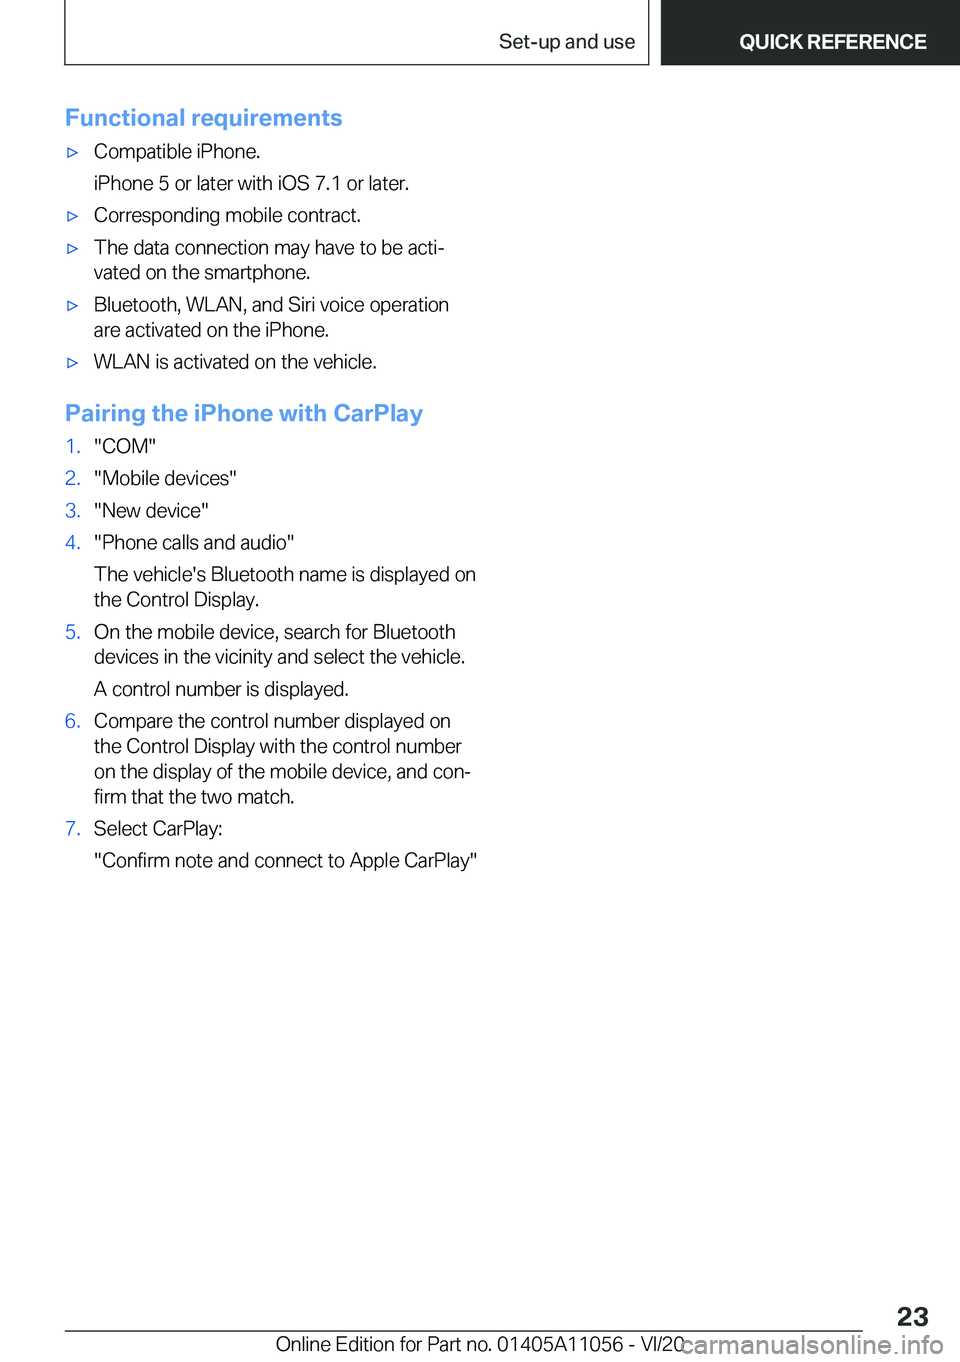 BMW X7 2021 Owners Manual �F�u�n�c�t�i�o�n�a�l��r�e�q�u�i�r�e�m�e�n�t�s'x�C�o�m�p�a�t�i�b�l�e��i�P�h�o�n�e�.
�i�P�h�o�n�e��5��o�r��l�a�t�e�r��w�i�t�h��i�O�S��7�.�1��o�r��l�a�t�e�r�.'x�C�o�r�r�e�s�p�o�n�d�i�n�